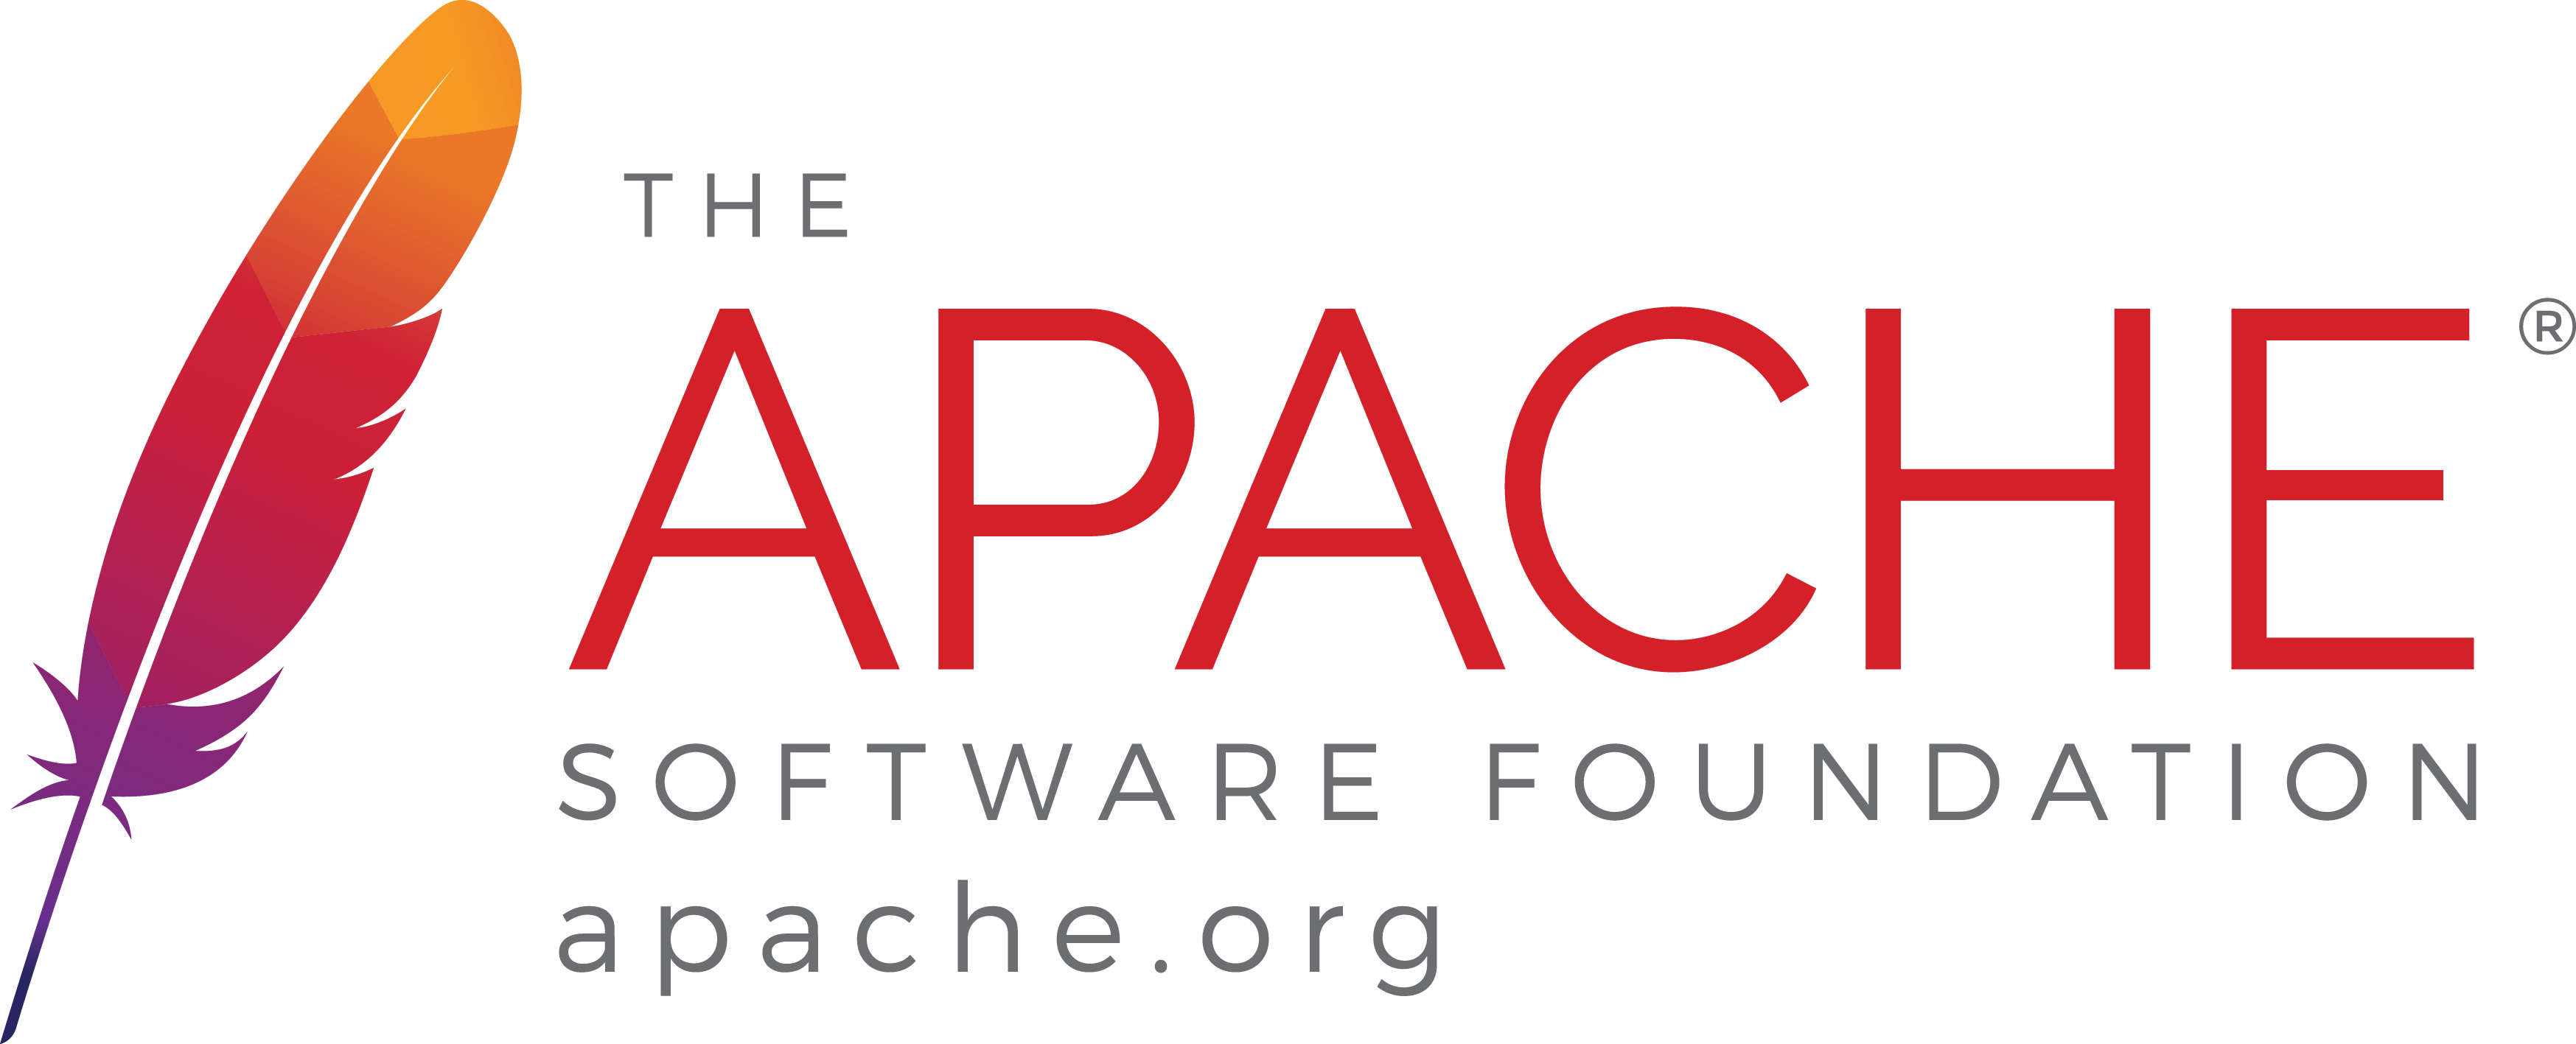 Apache-2.0 License